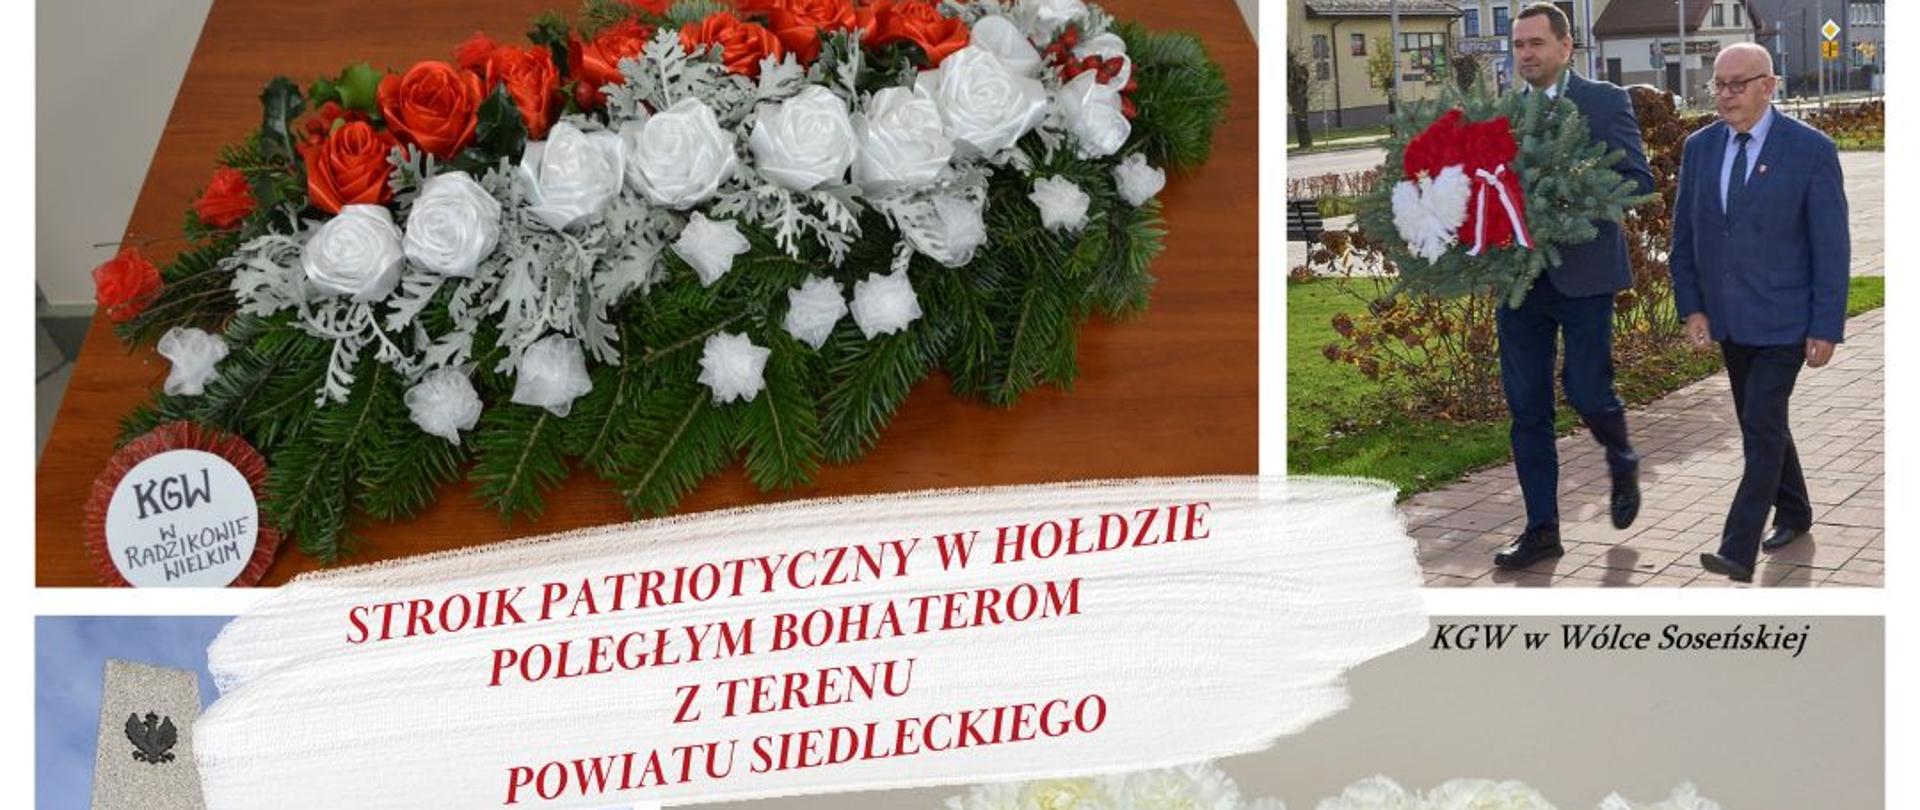 Stroik Patriotyczny w hołdzie Poległym Bohaterom z terenu Powiatu Siedleckiego.